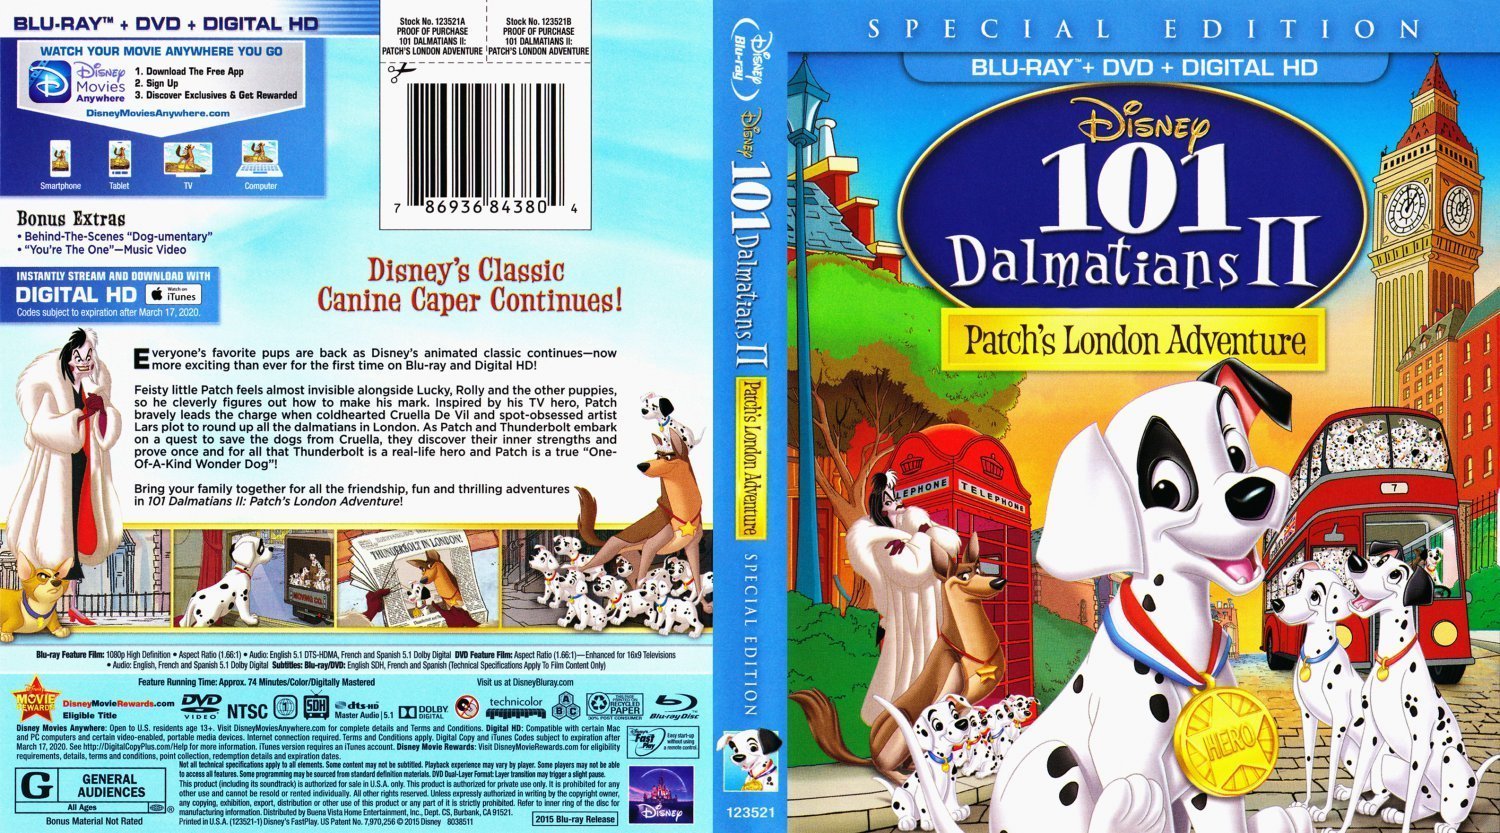 101 dalmatians 2 patch's london adventure vhs